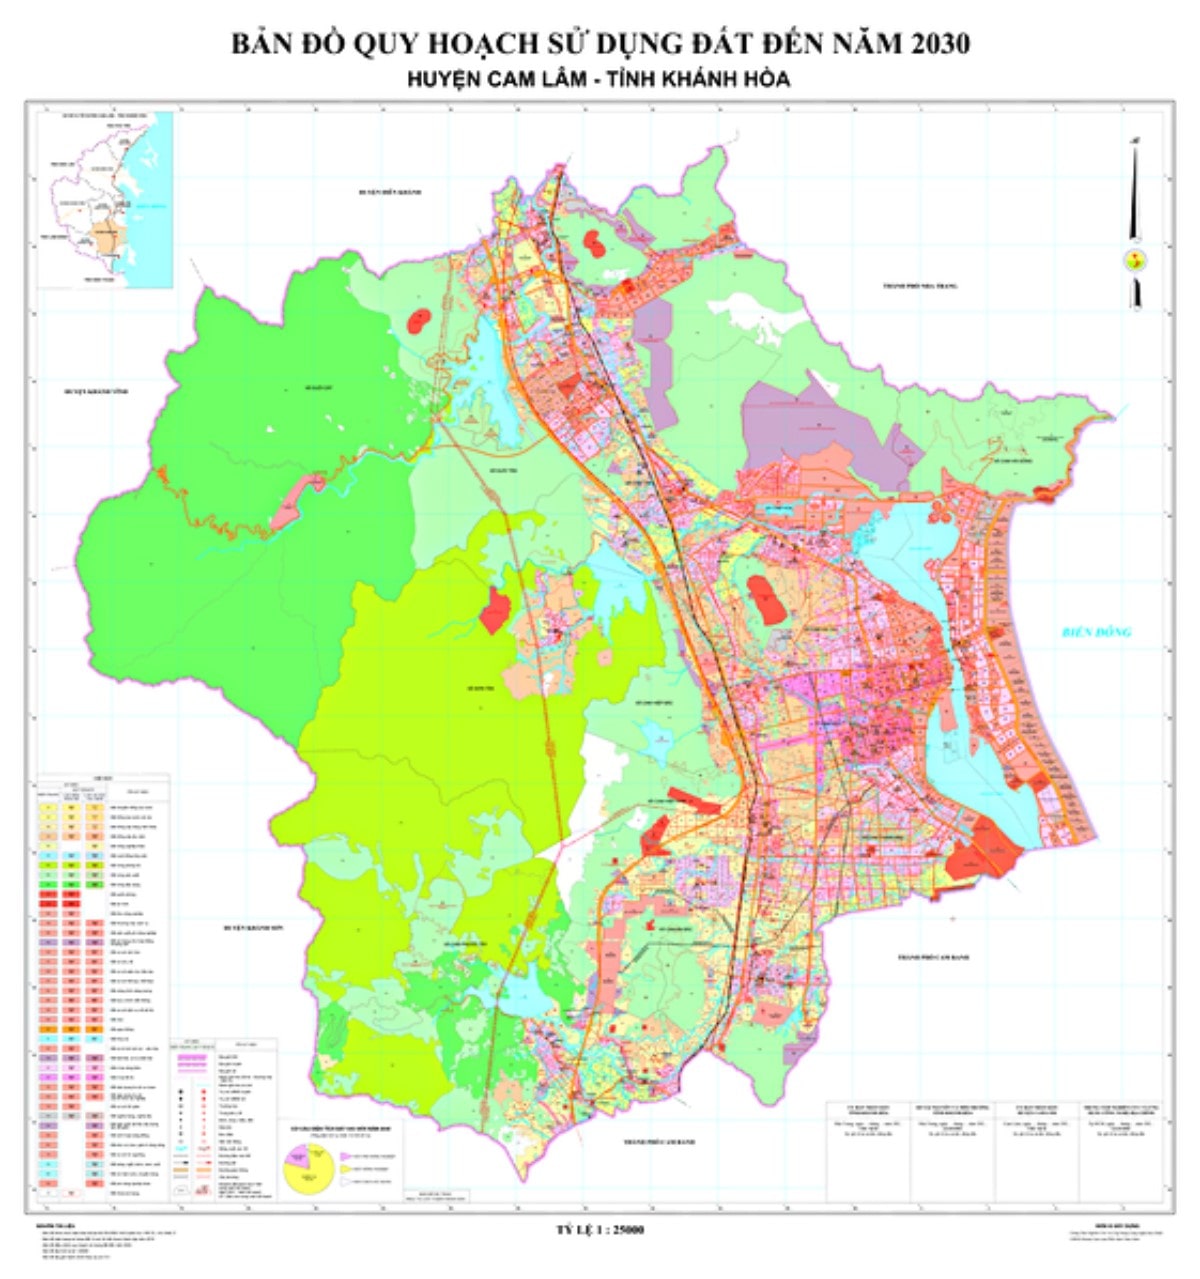 Tra cứu bản đồ quy hoạch huyện Cam Lâm, Khánh Hòa tầm nhìn 2030